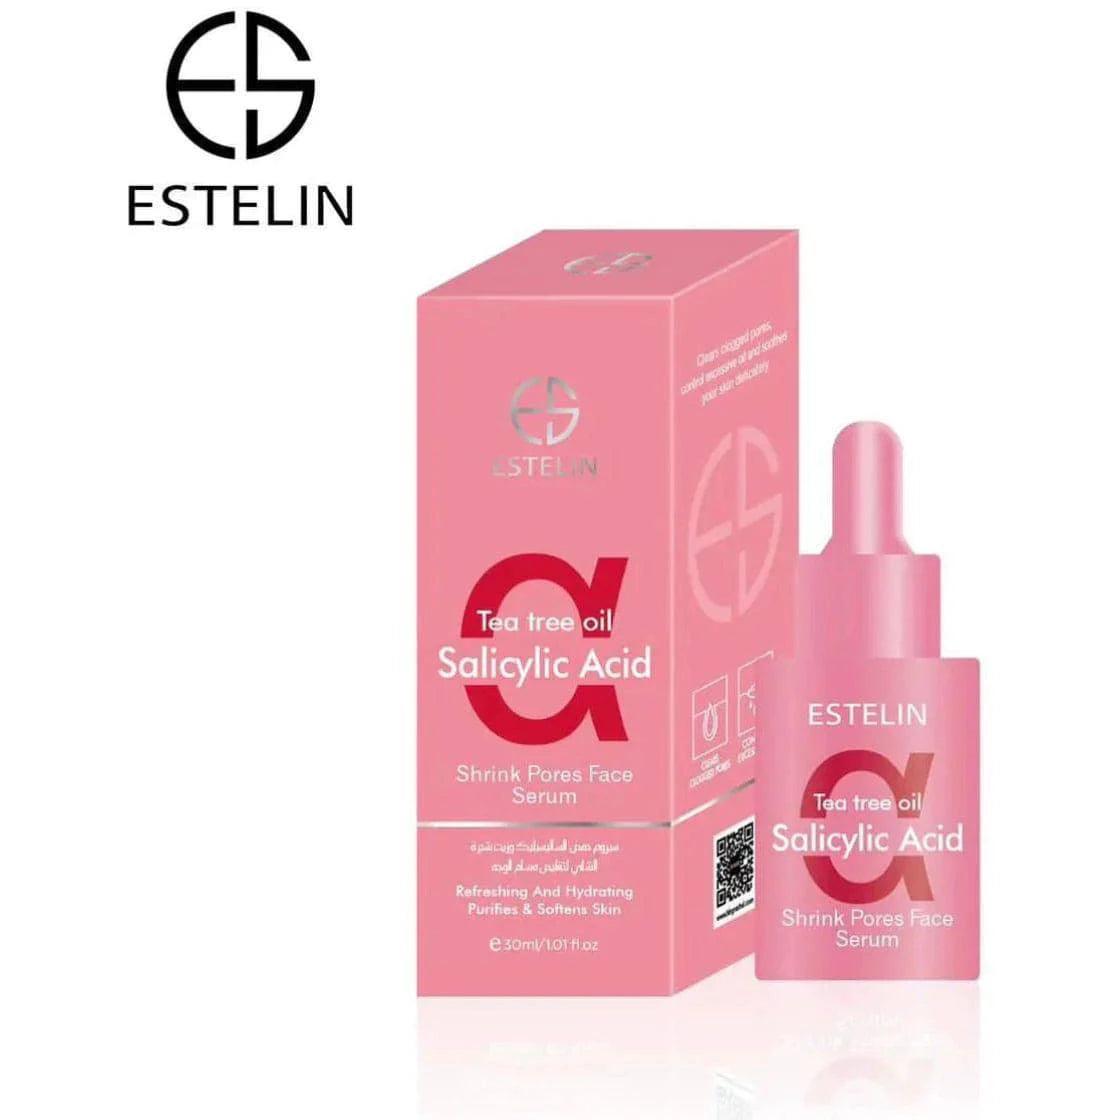 Estelin Skin Care Multipurpose Face Serum - 30ml - Dr Rashel Official